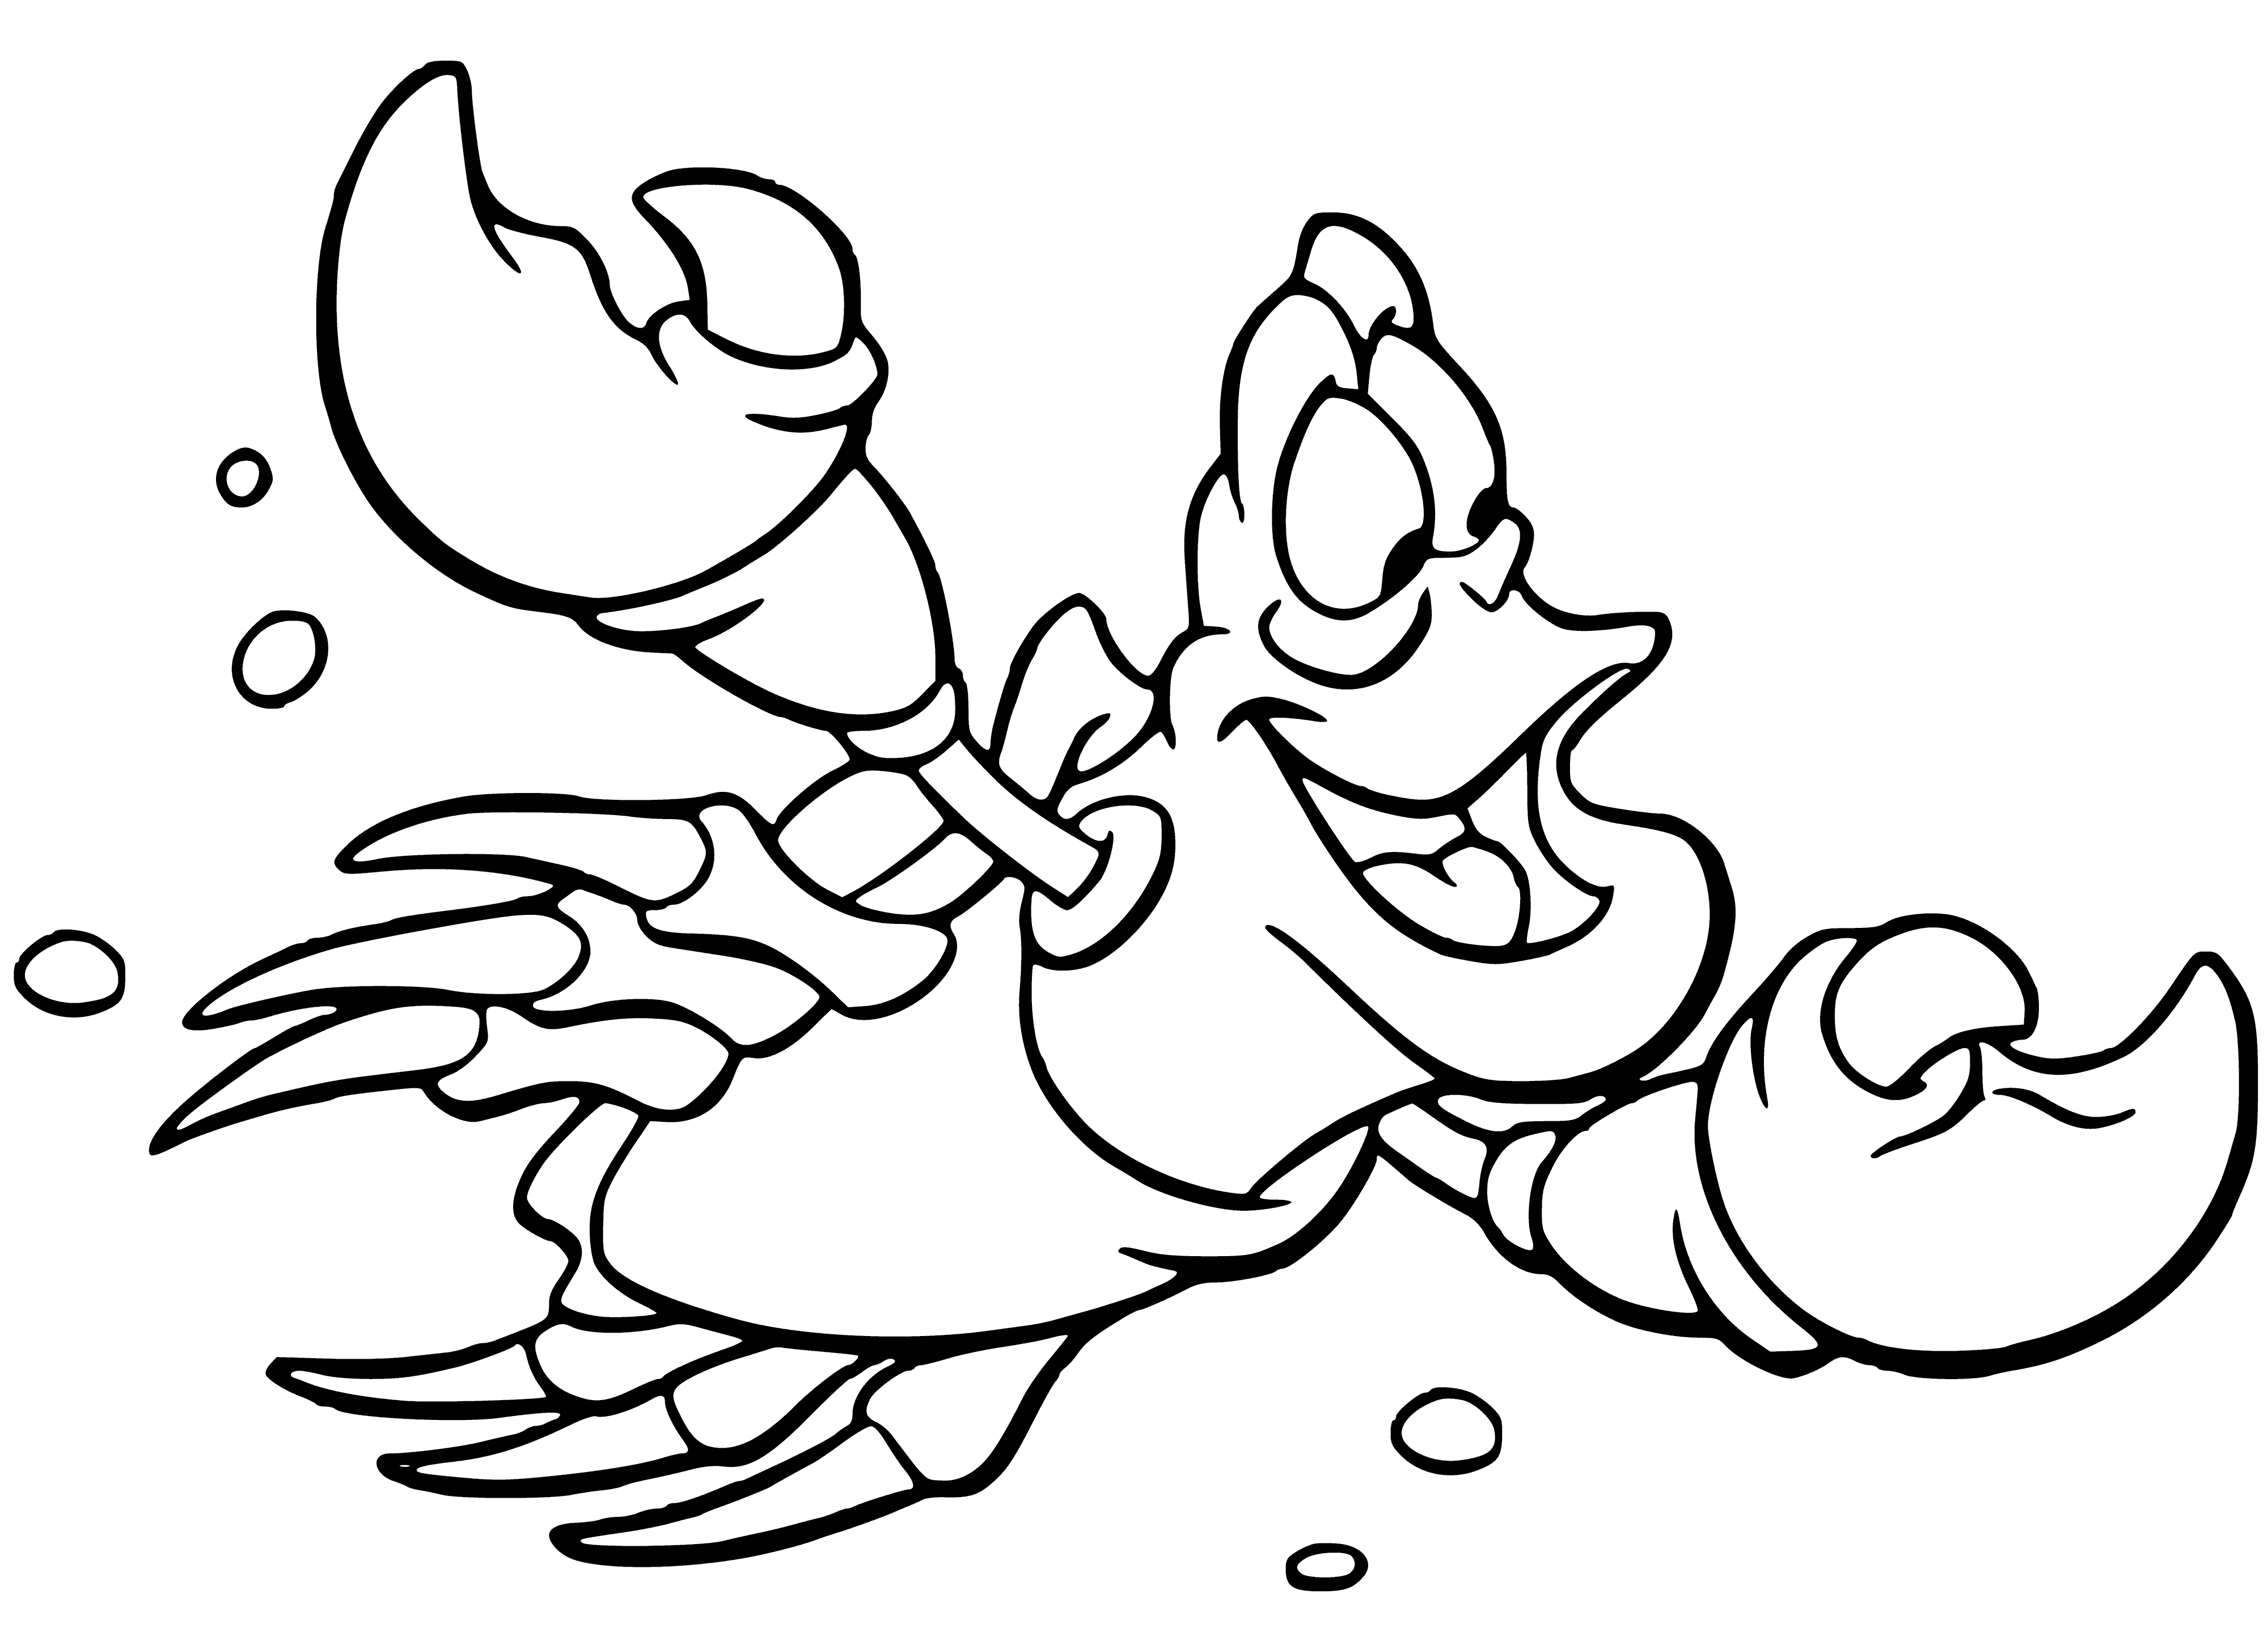 Crab Sebastian coloring page